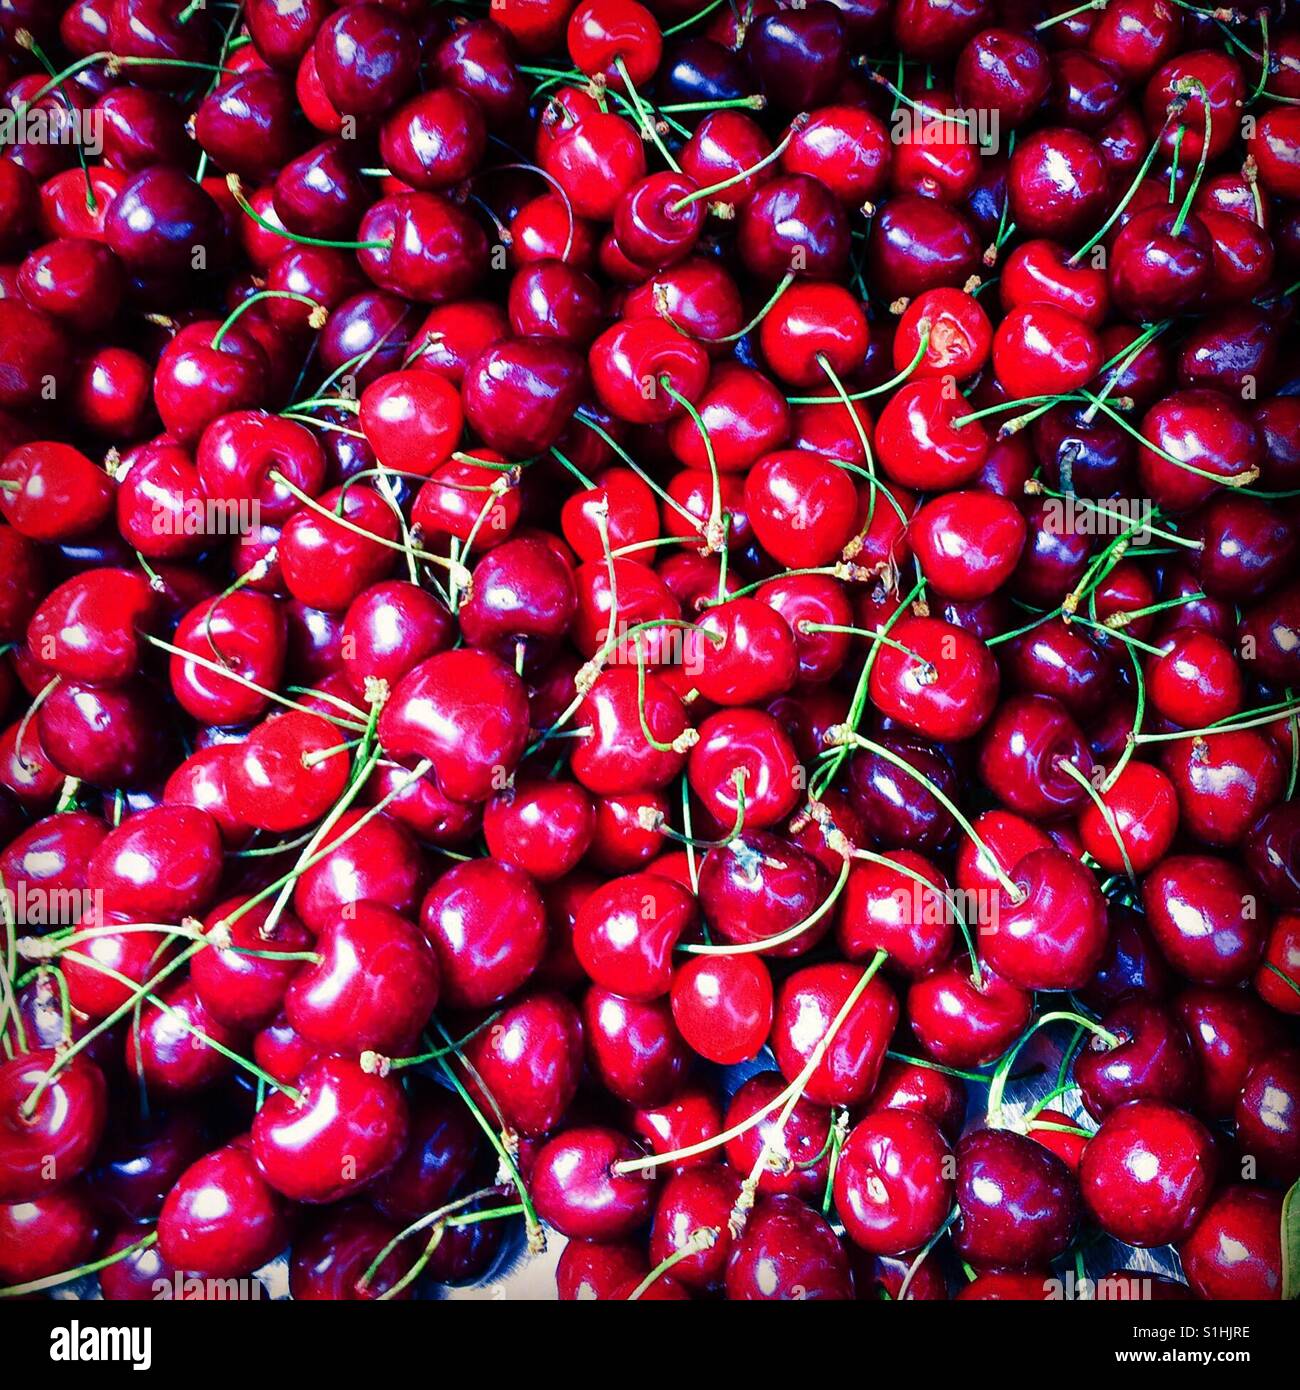 Cherries Voulagmeni market Athens Greece Stock Photo